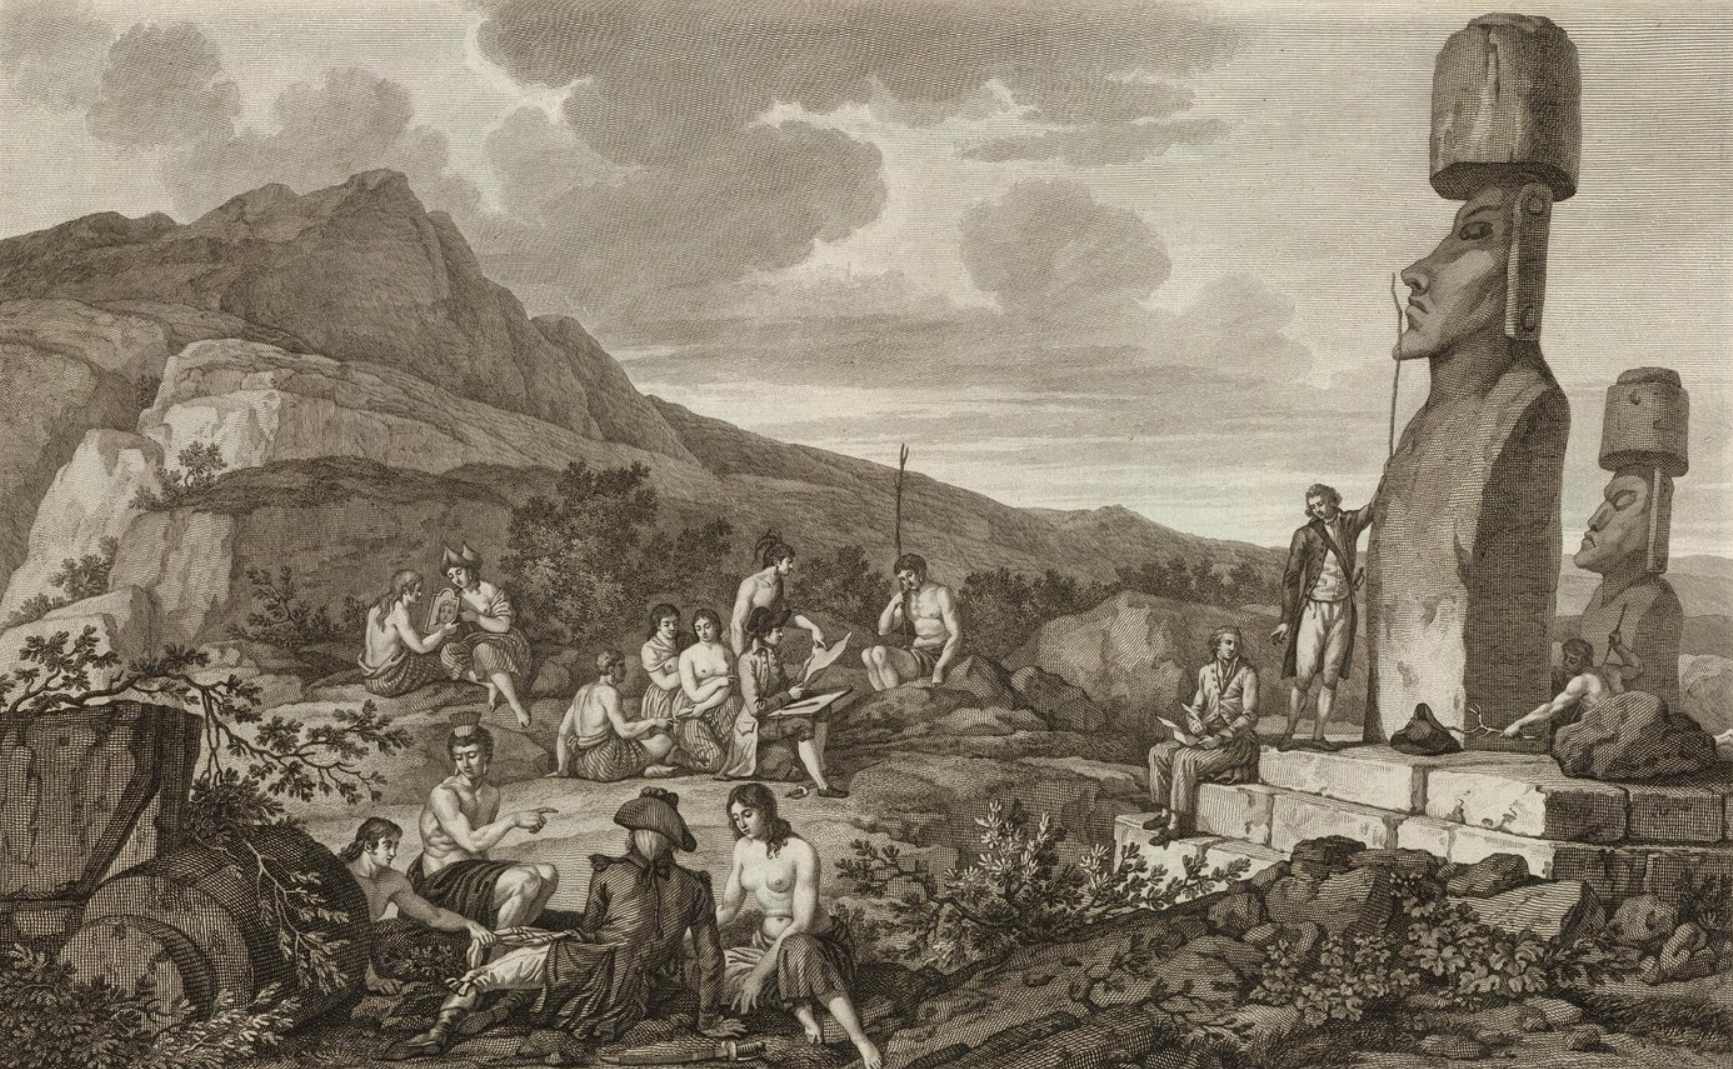 През 1722 г., когато на Великден, холандецът Якоб Рогевийн открил острова. Той беше първият европеец, който откри този загадъчен остров. Рогевийн и екипажът му изчисляват, че на острова има от 2,000 до 3,000 жители. Очевидно изследователите съобщават за все по-малко жители с течение на годините, докато накрая населението намалява до по-малко от 100 за няколко десетилетия. Сега се смята, че населението на острова е било около 12,000 XNUMX в своя пик.